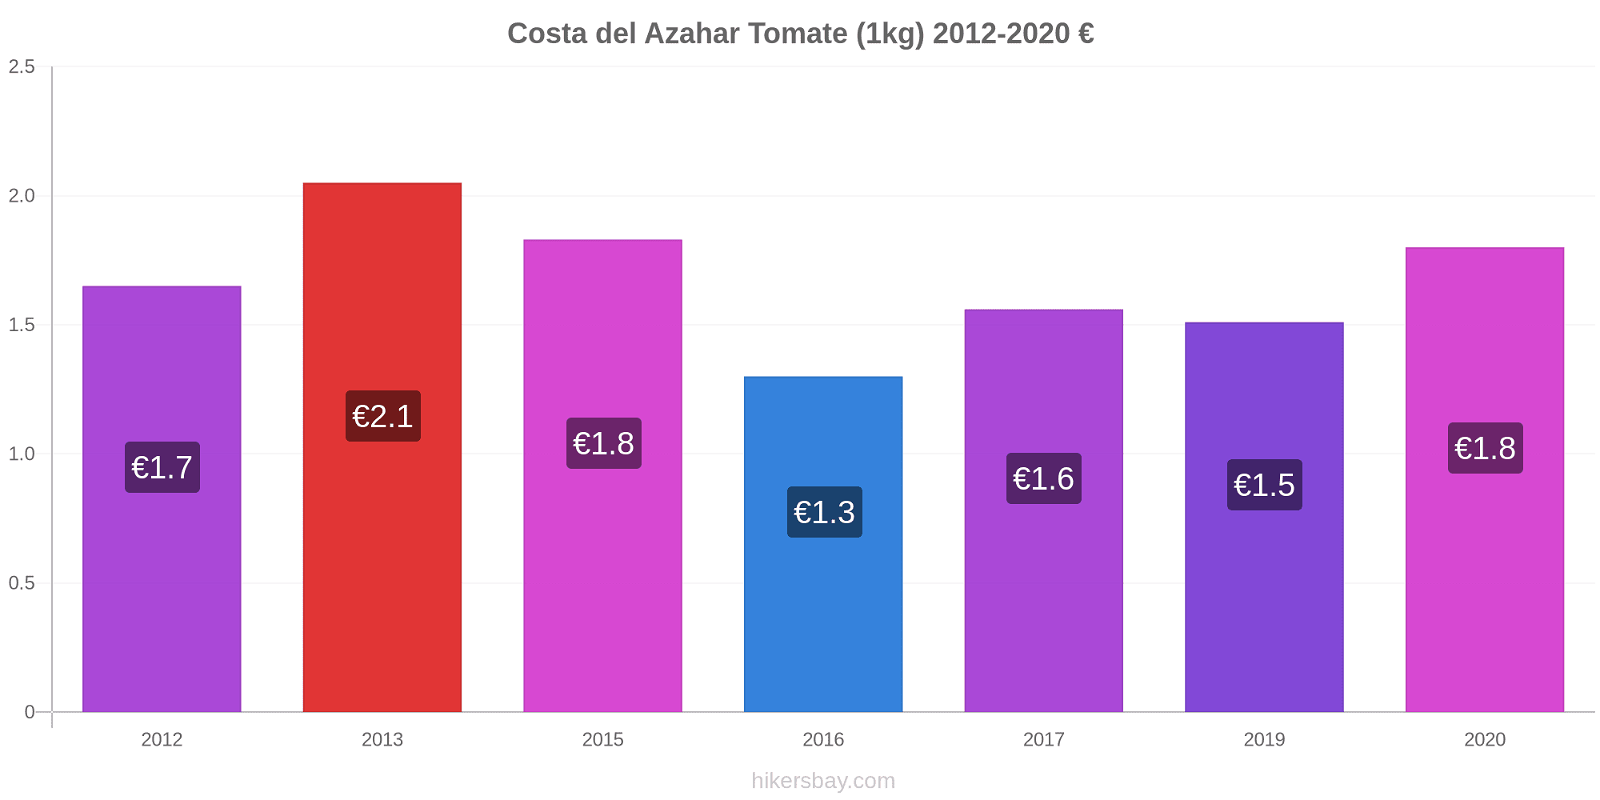 Costa del Azahar cambios de precios Tomate (1kg) hikersbay.com